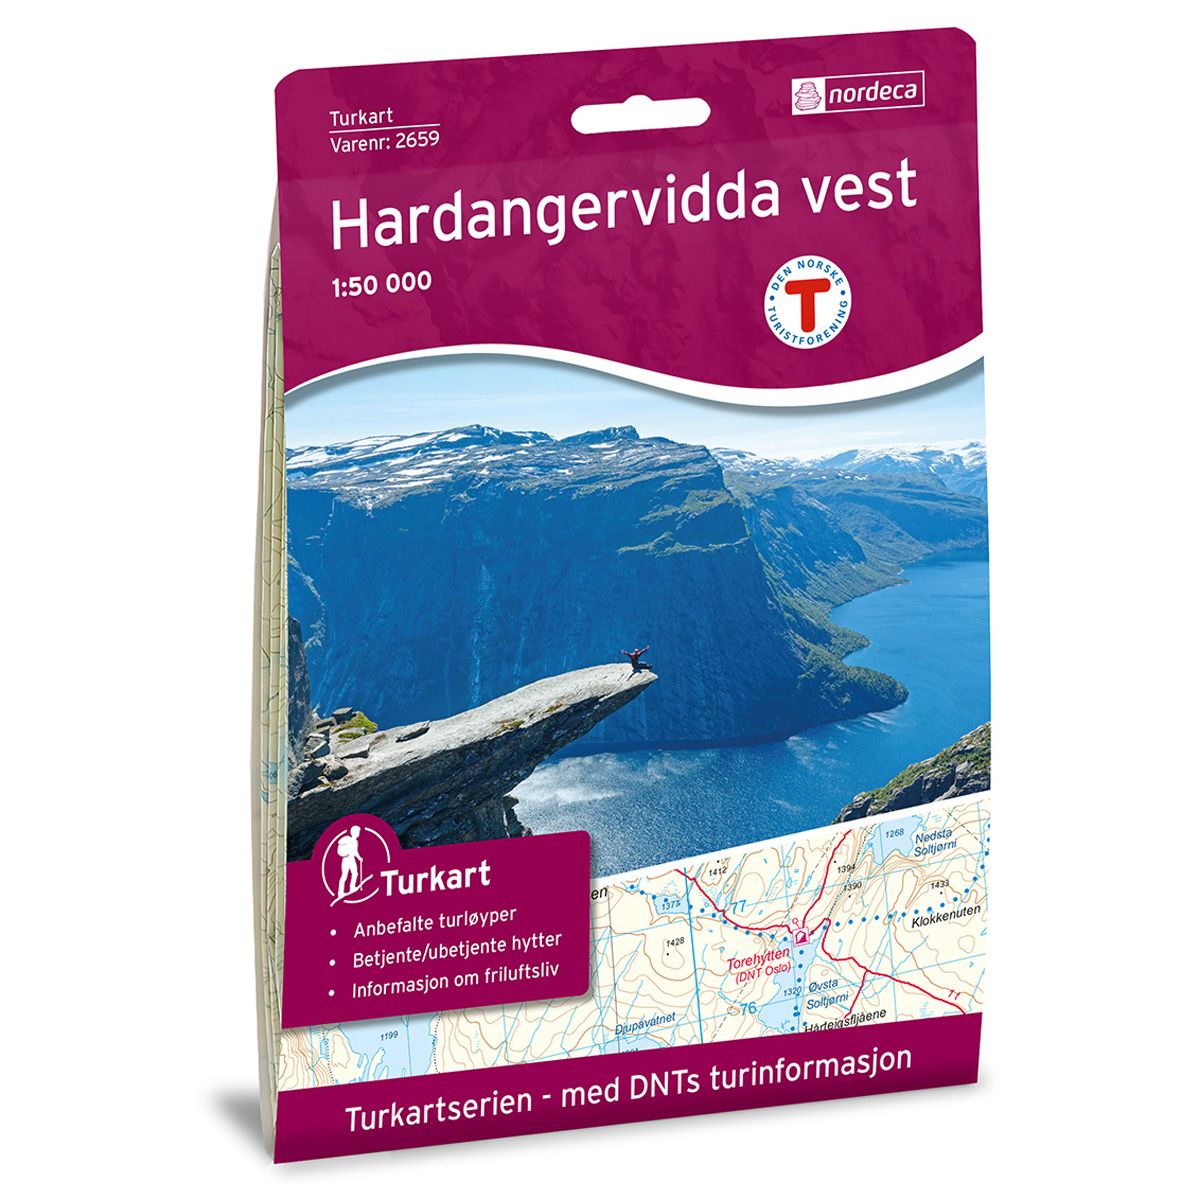 Hardangervidda vest